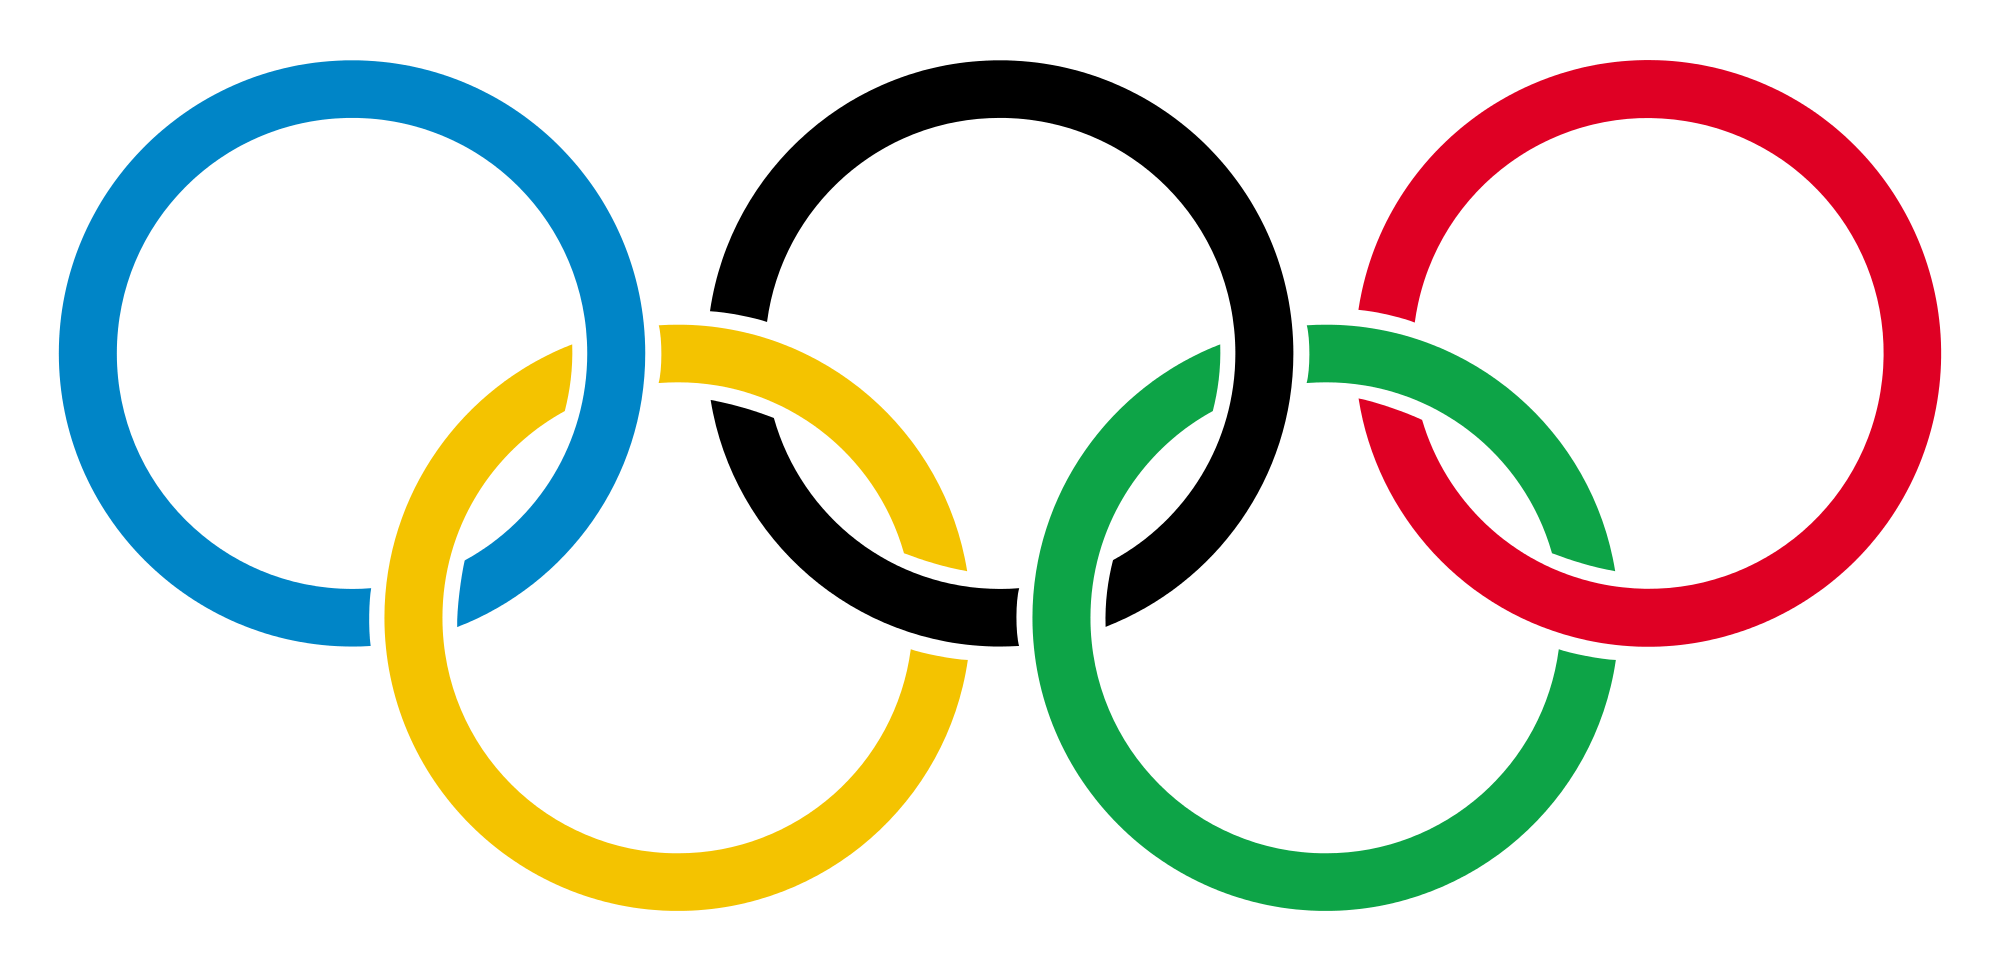 Simbolo de los Cinco Anillos de Diferentes Colores Representando los Juegos Olímpicos